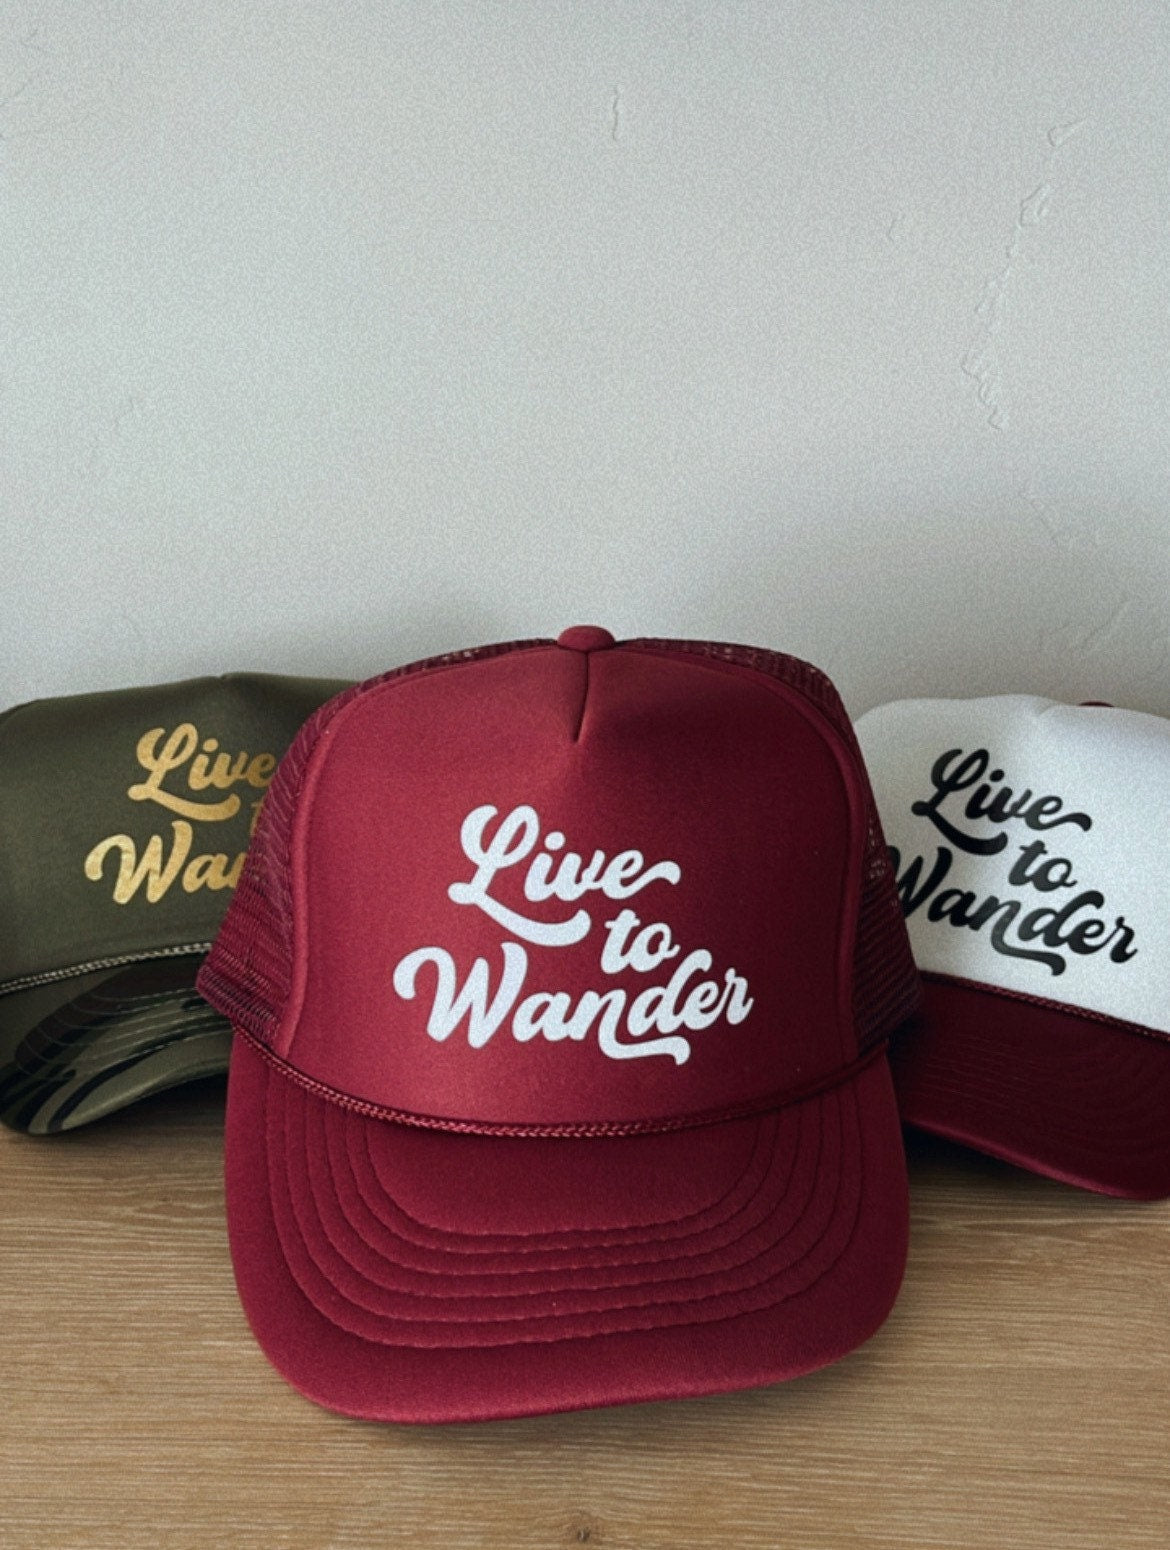 Bohemian Trucker Hat, Cute Trucker Hat, Women's Hats, Live To Wandee Hat, Retro Hat, Snapback, Summer Hat, Vacation Hat, Rad Hats,  Hat